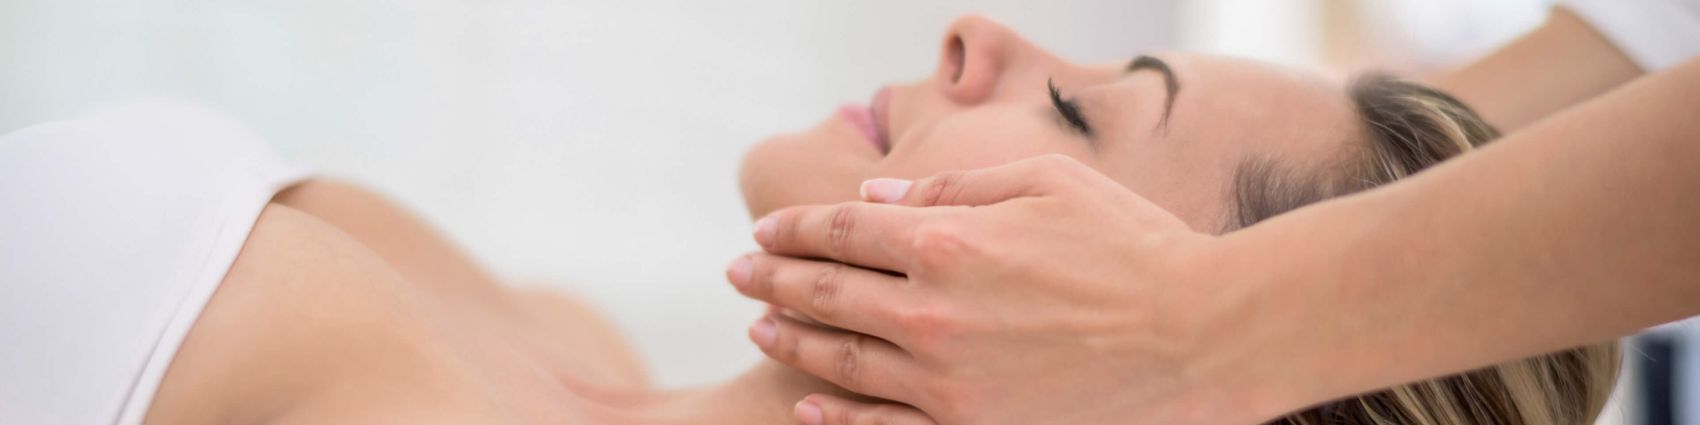 Massage im Luxus-Hotel